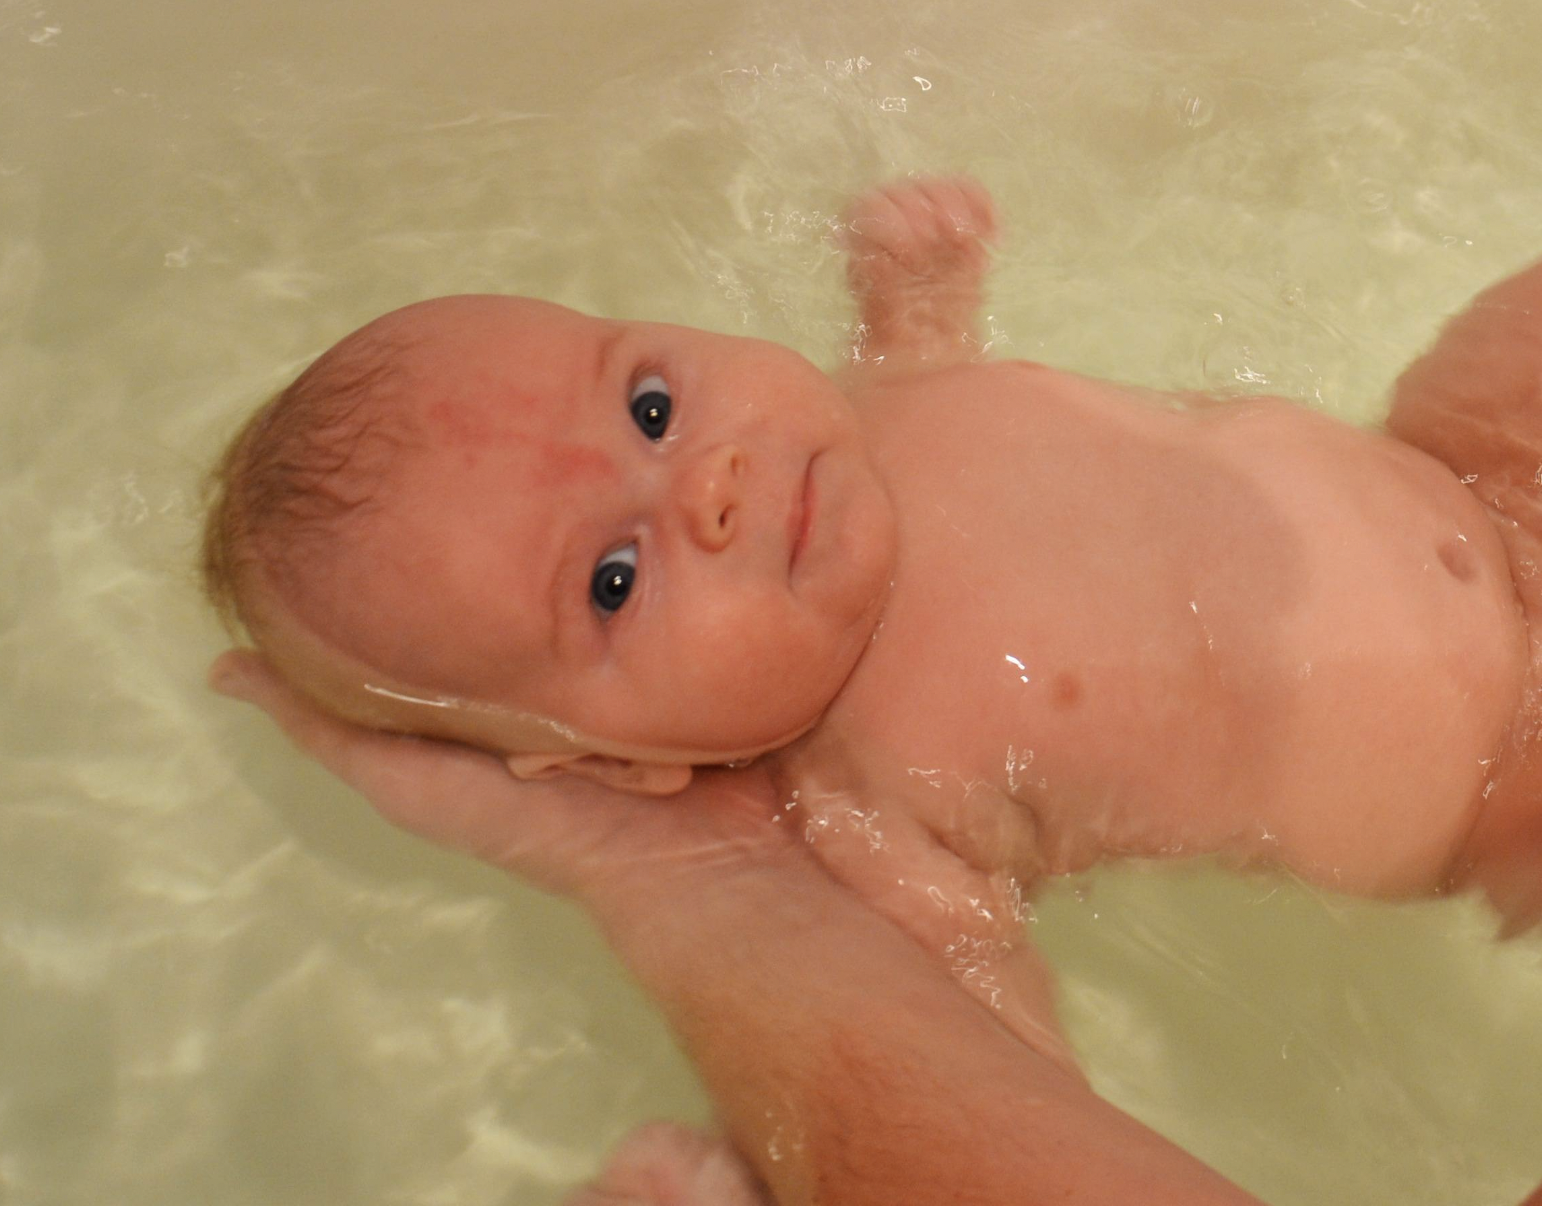 Um bebê toma banho em uma banheira | Fonte: Flickr